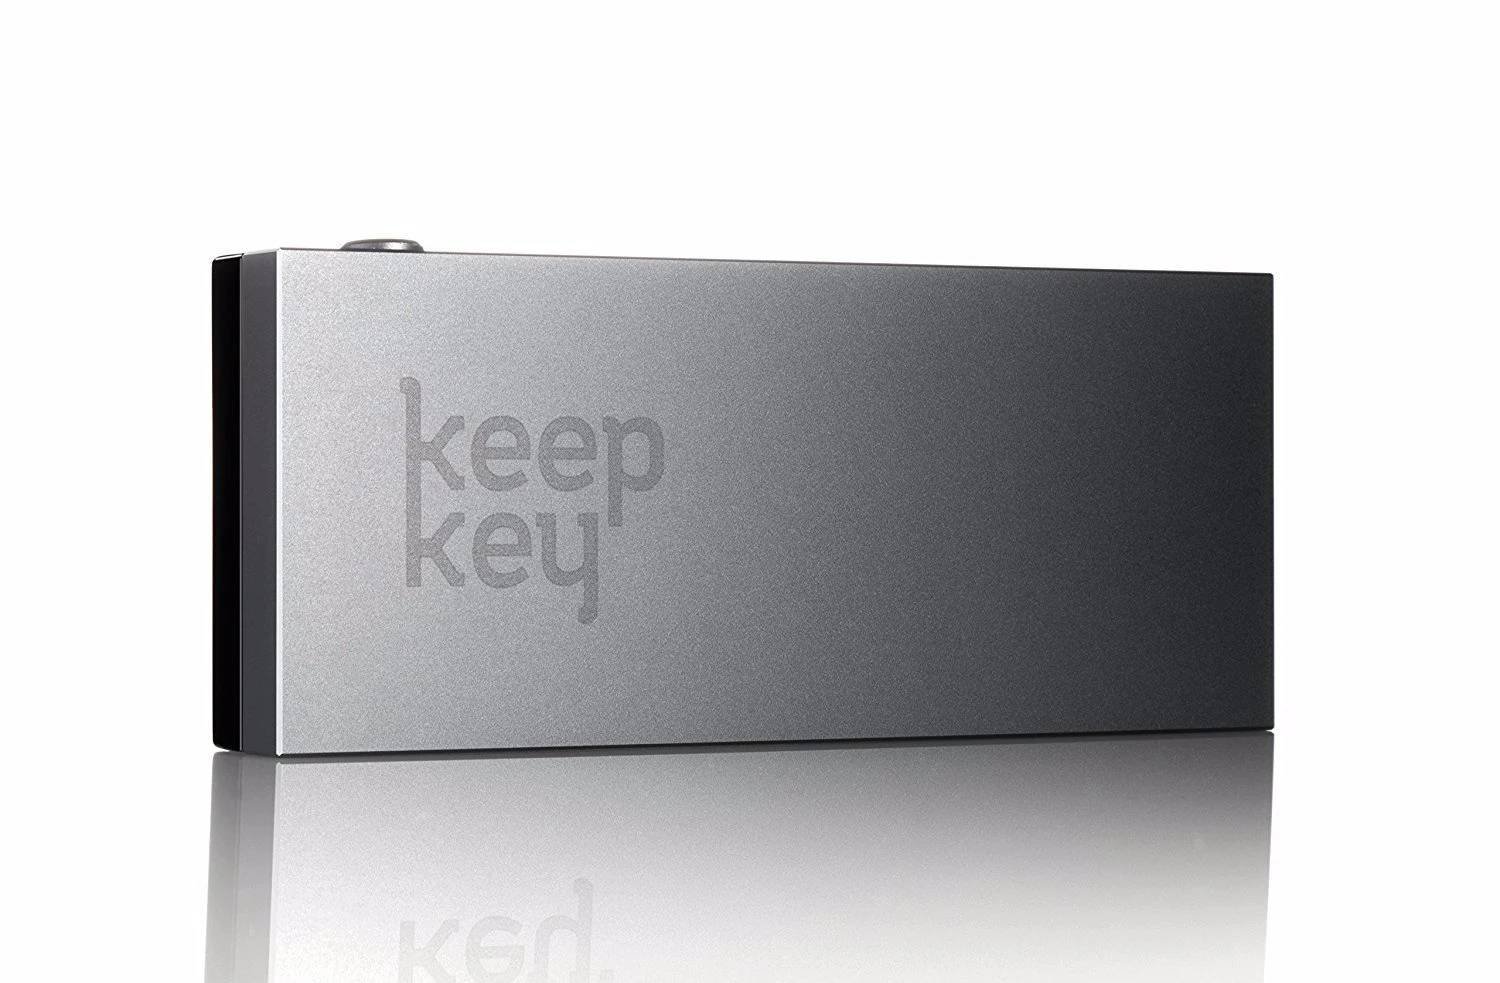 keepkey hardware wallet